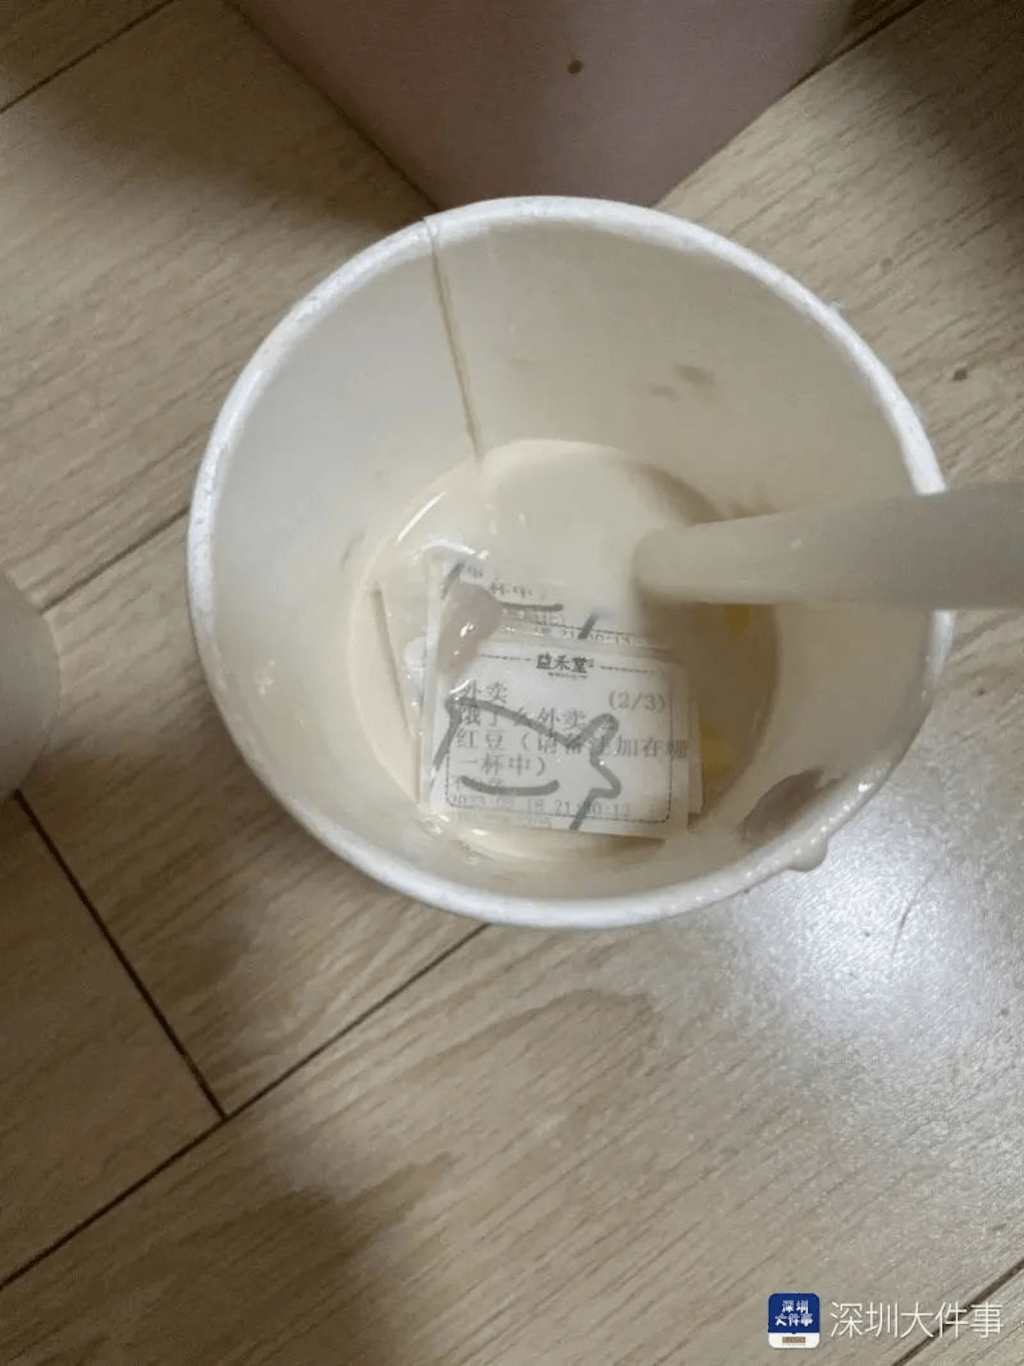 网民称喝奶茶喝到一半发现杯底有标签贴纸。